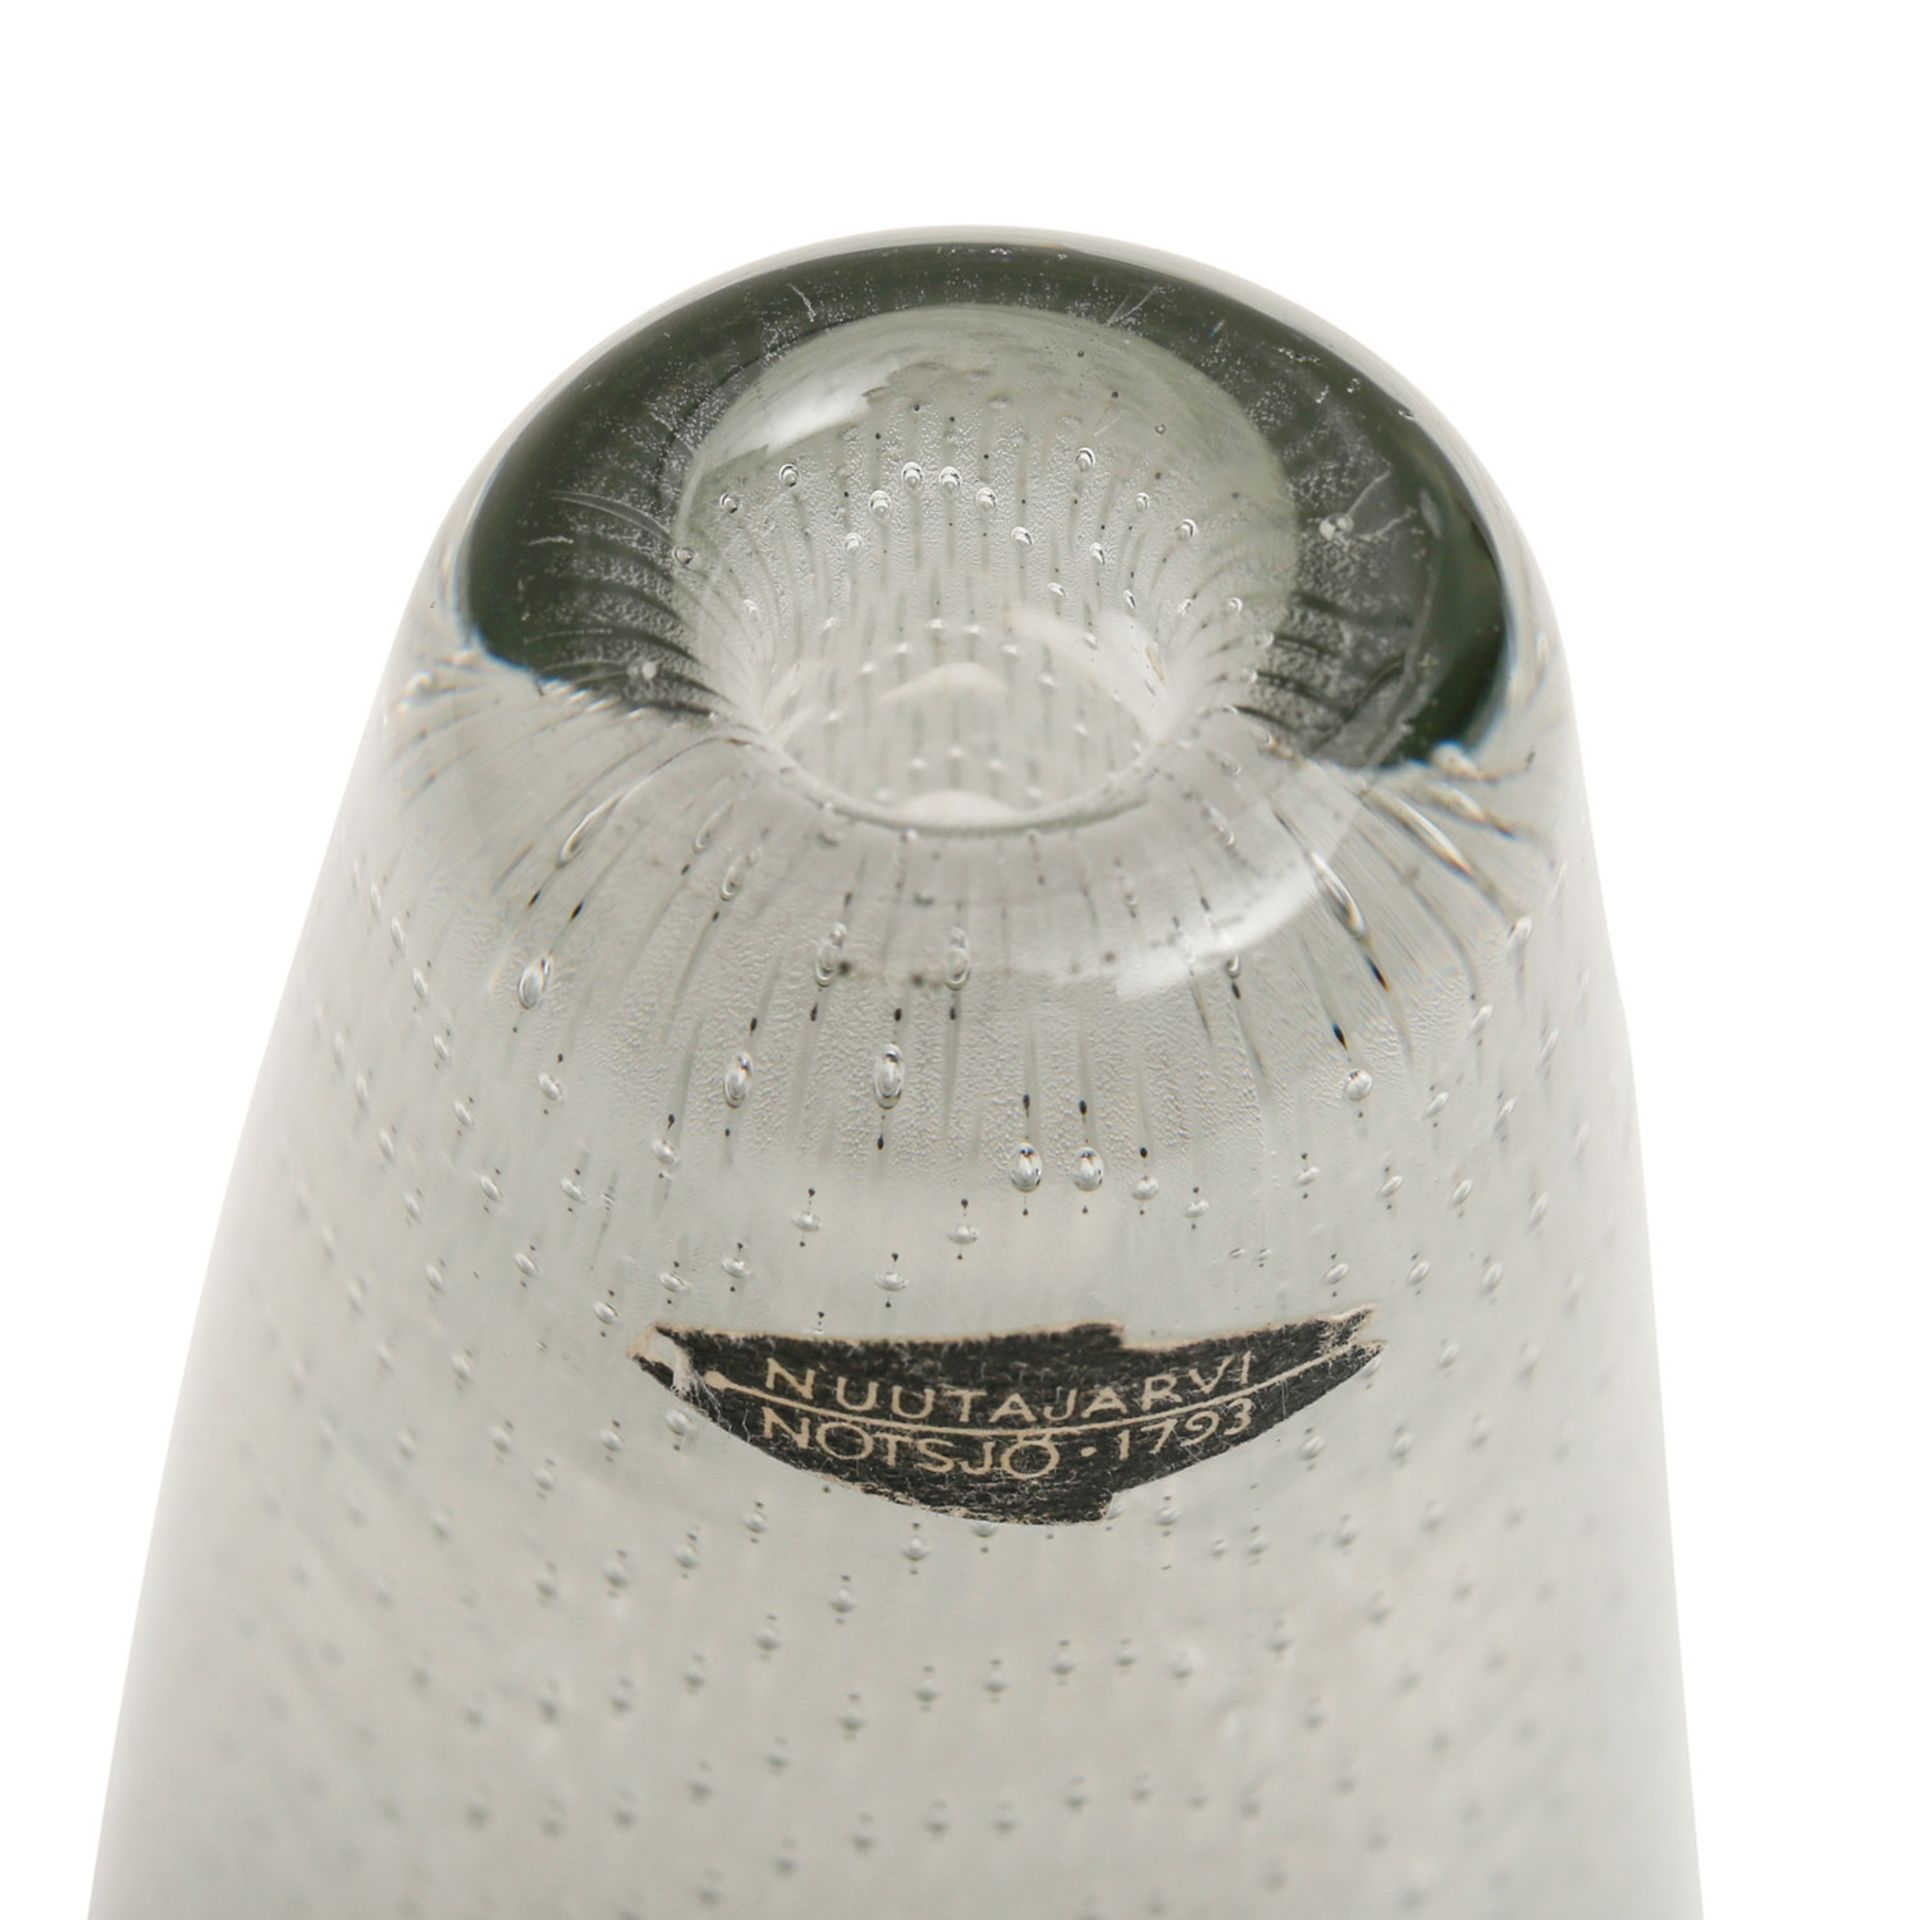 NUUTAJÄRVI Vase, 1950er Jahre. Kristallglas mit einem Dekor von eingeschlossenen Luftbläschen, - Bild 4 aus 5